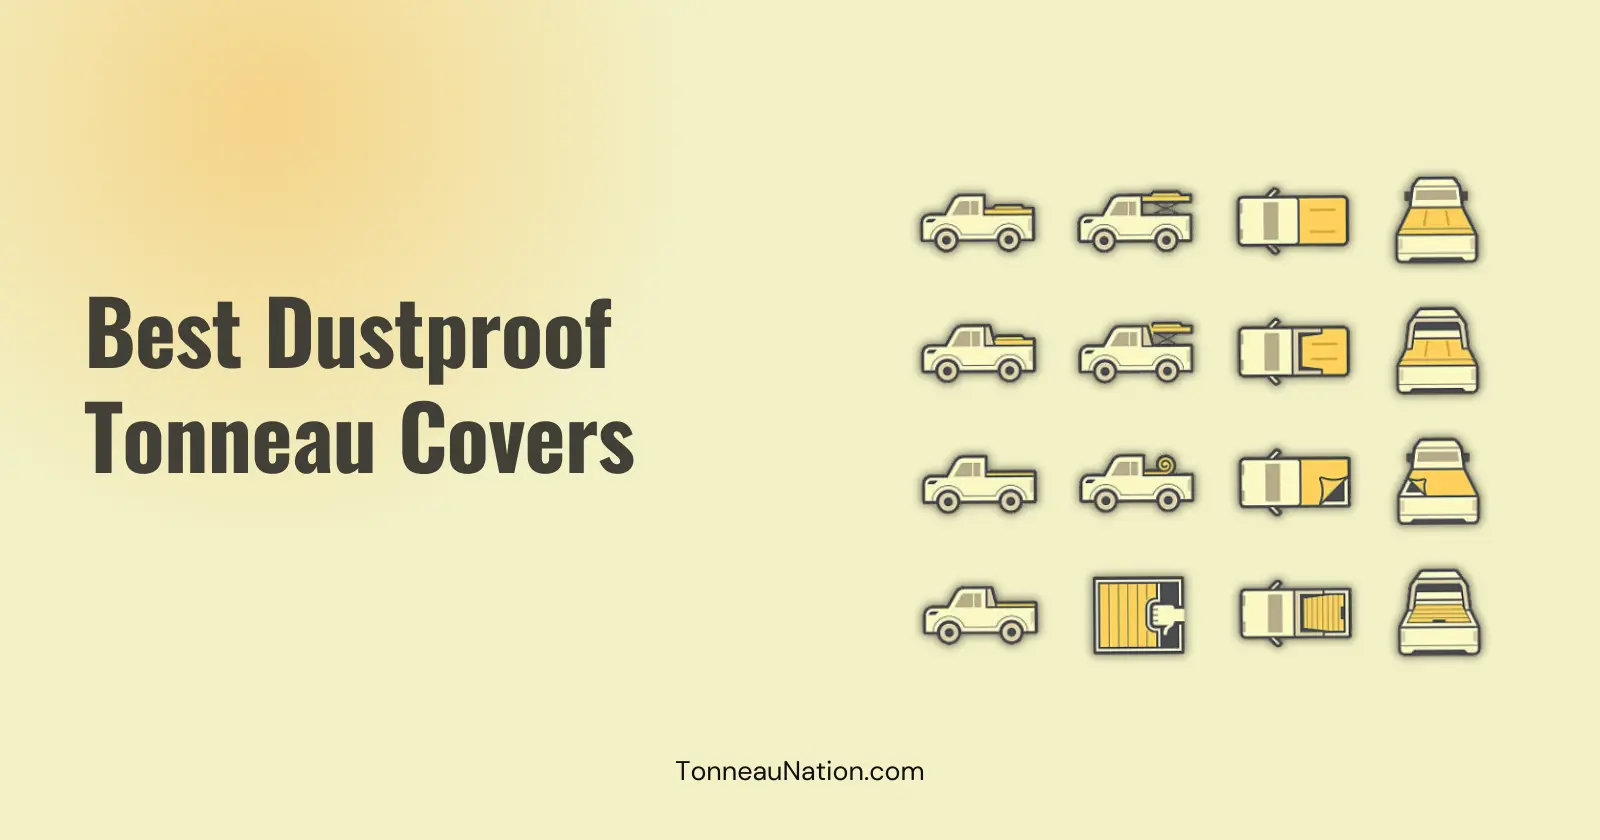 Dustproof tonneau cover